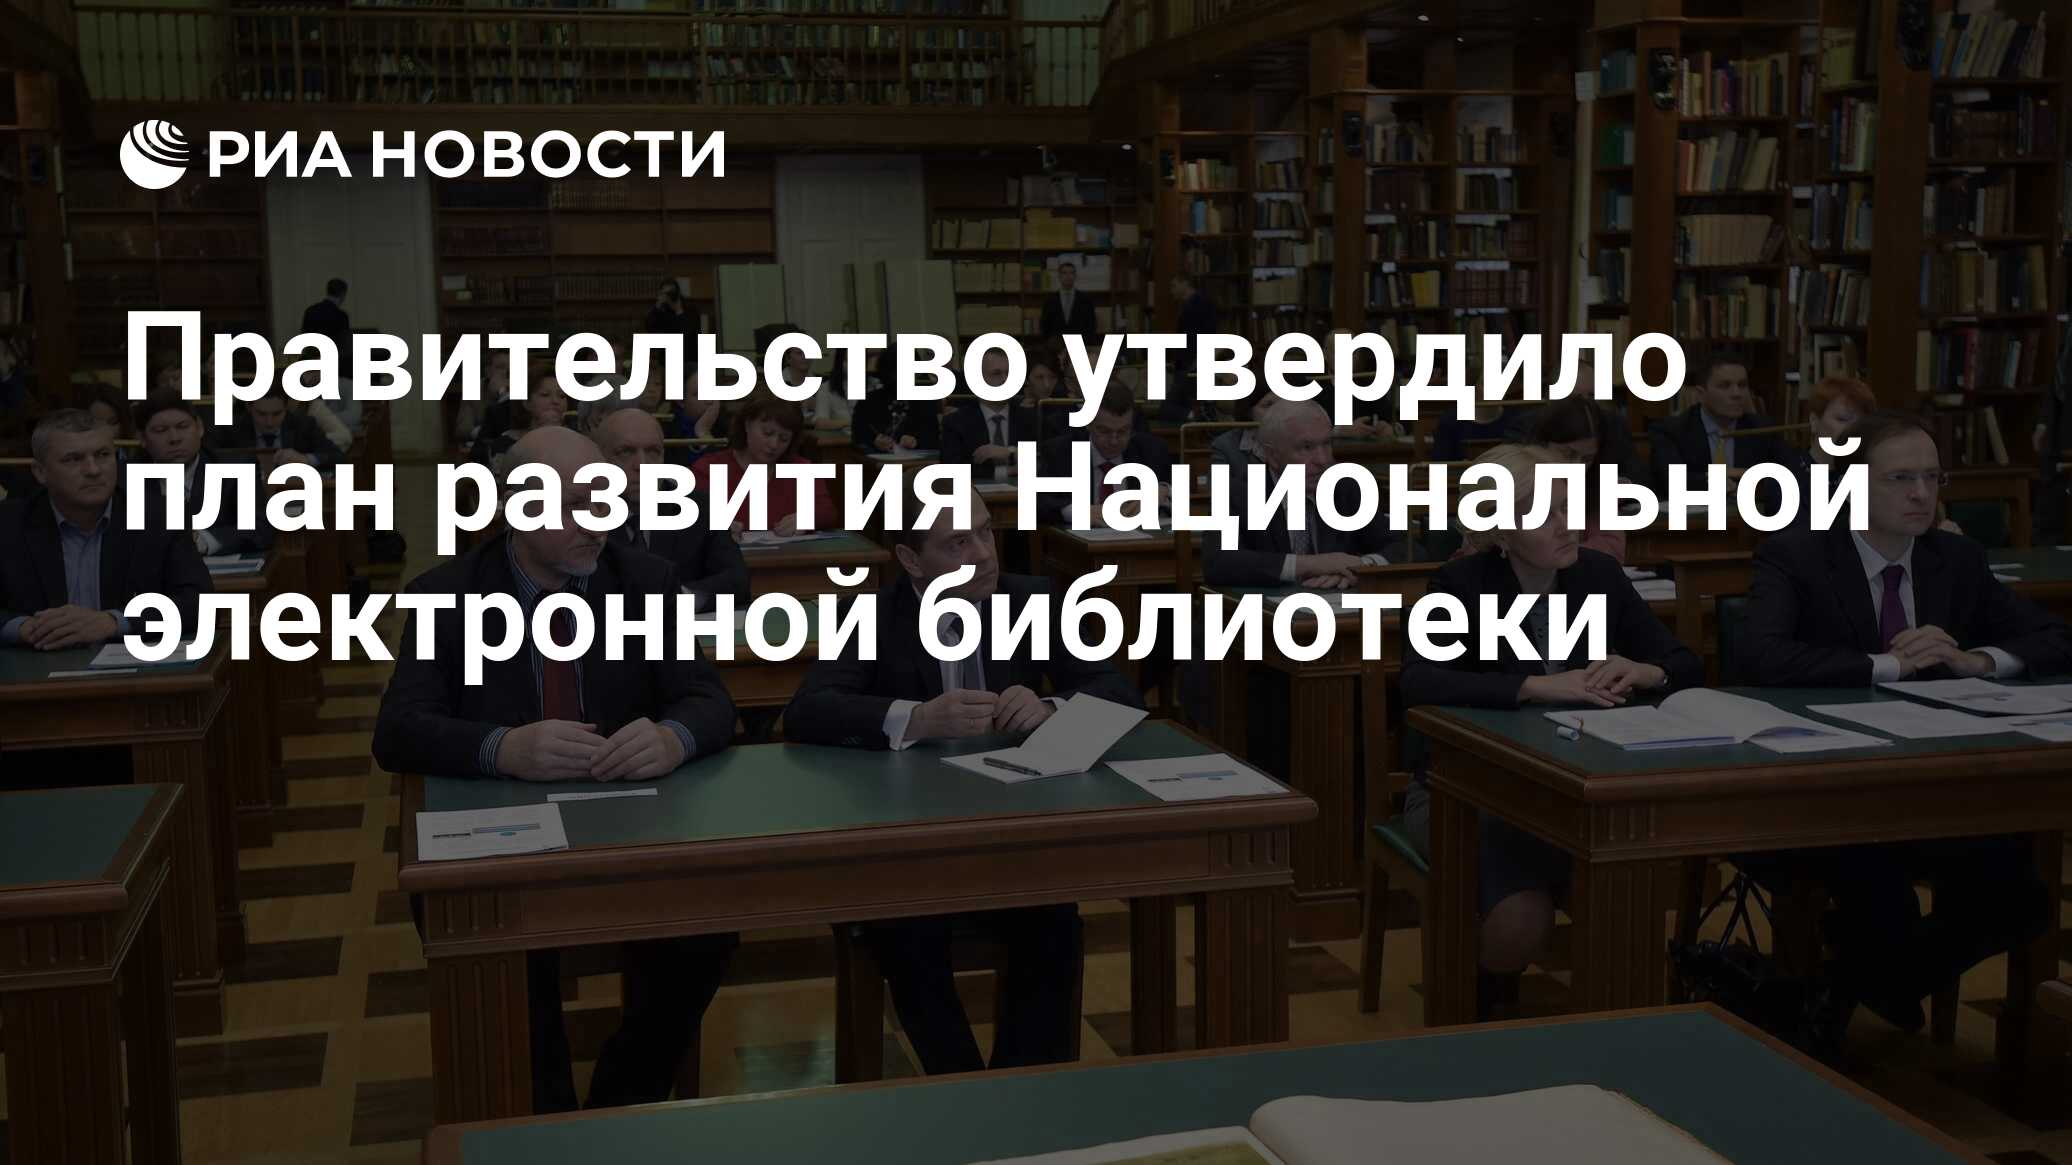 Библиотека правительство Россия. Библиотека риа новости